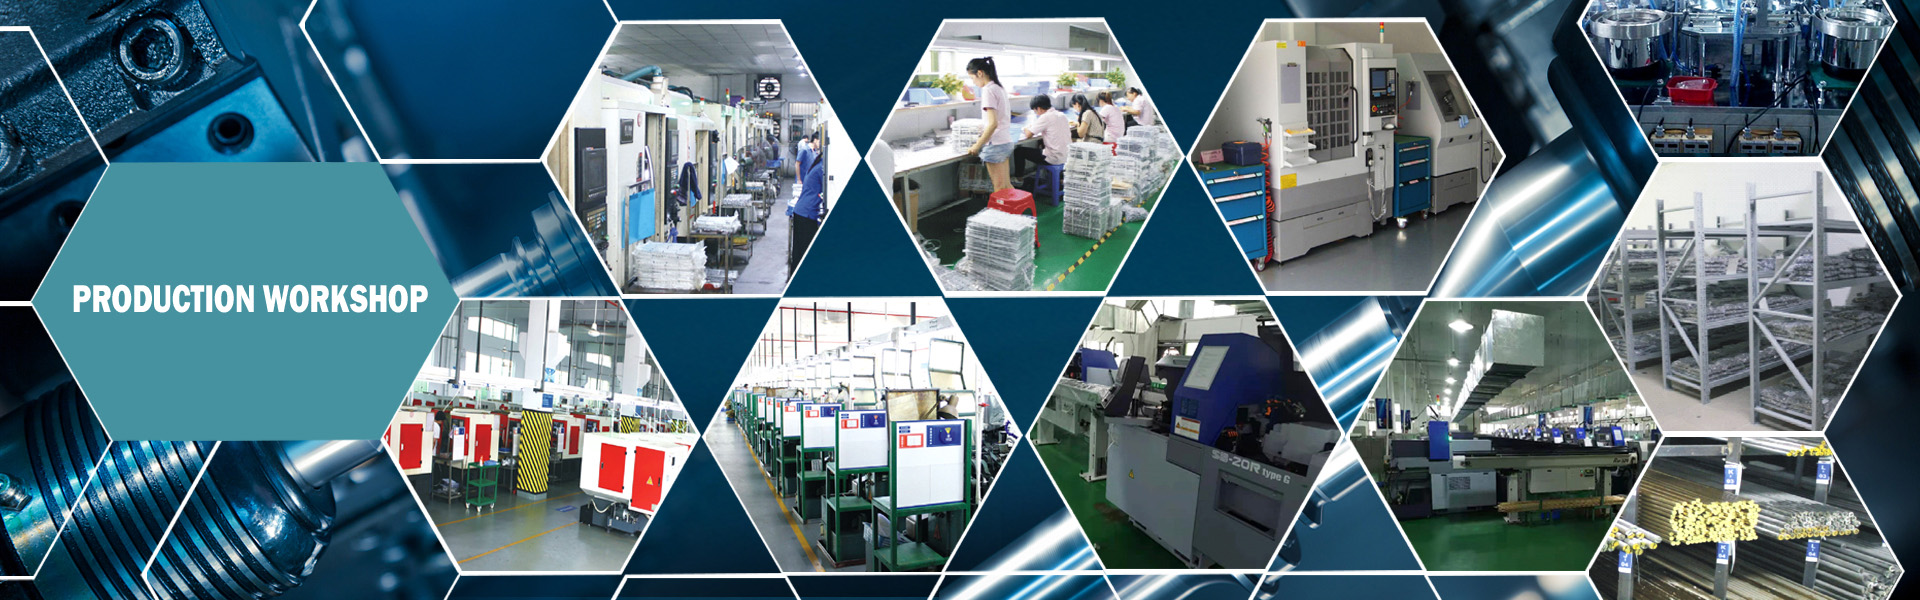 Прецизионное оборудование, литья литья, формирование профиля,Dongguan Xililai Precision Hardware Co.,Ltd.